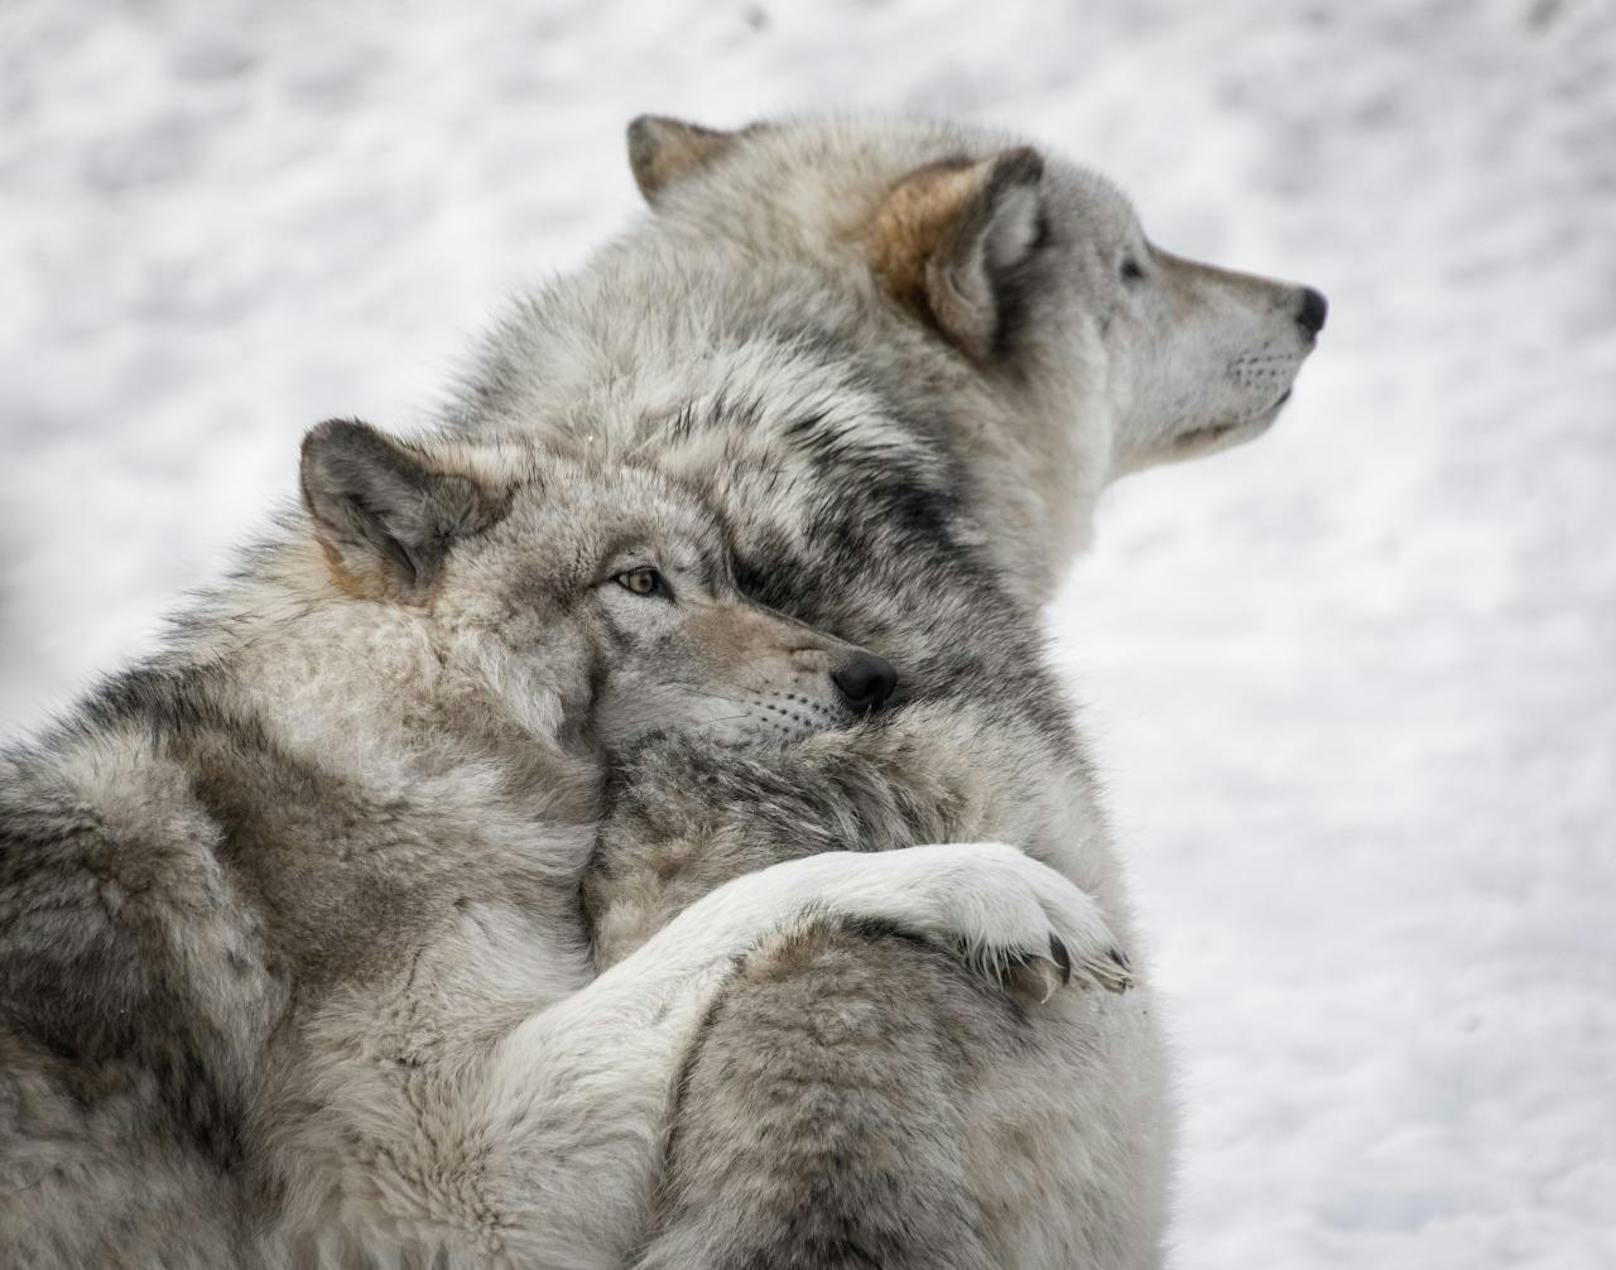 <b>Wolfsfakt 4: Wölfe sind gekommen um zu bleiben.</b>
Wölfe sind durch die (FHH) Fauna-Flora-Habitat Richtlinie der EU geschützt. In Österreich sind sie als jagdbares Wild ganzjährig geschont. Seit 2012 gibt es übrigens einen Wolfsmanagementplan.